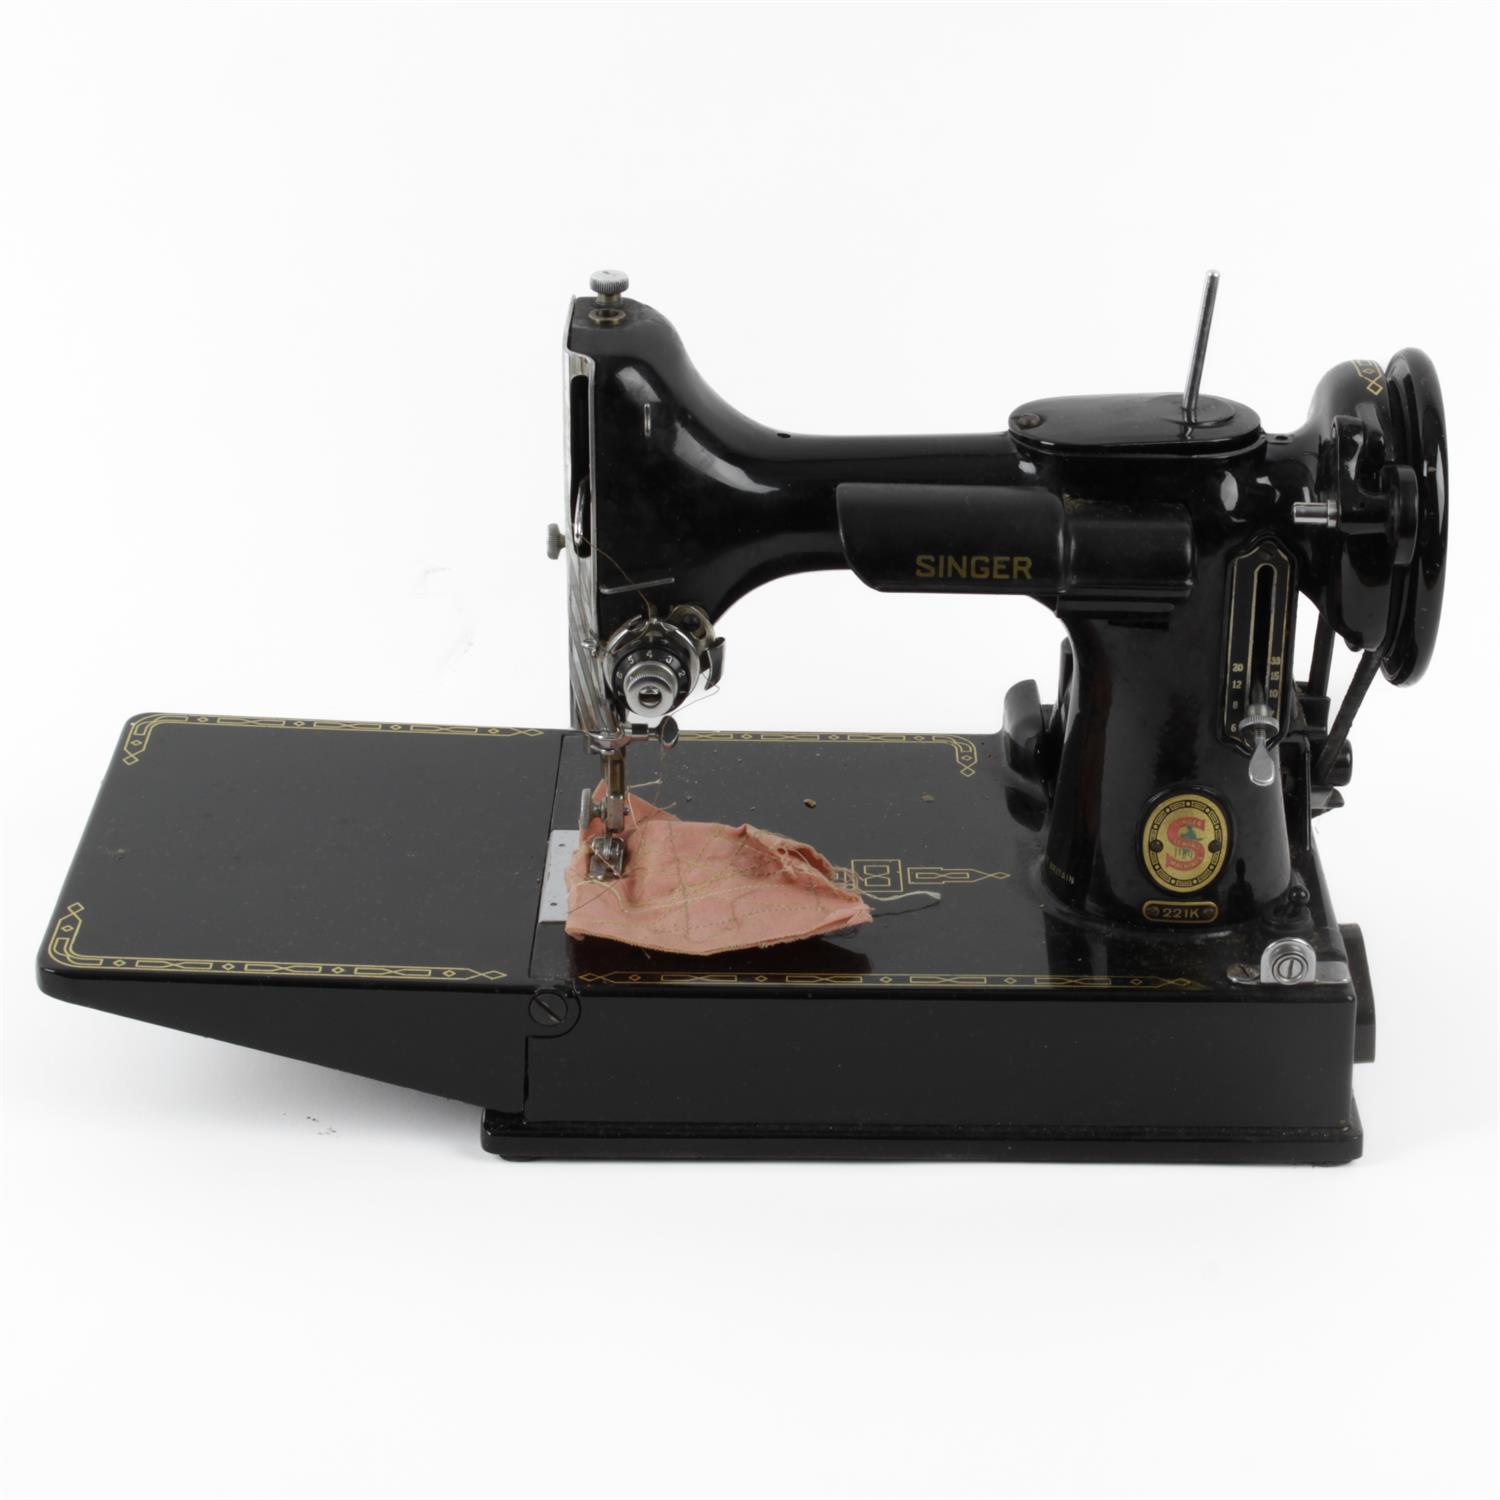 Singer 221K sewing machine, typewriter, radio and a Singer sewing machine - Image 2 of 2